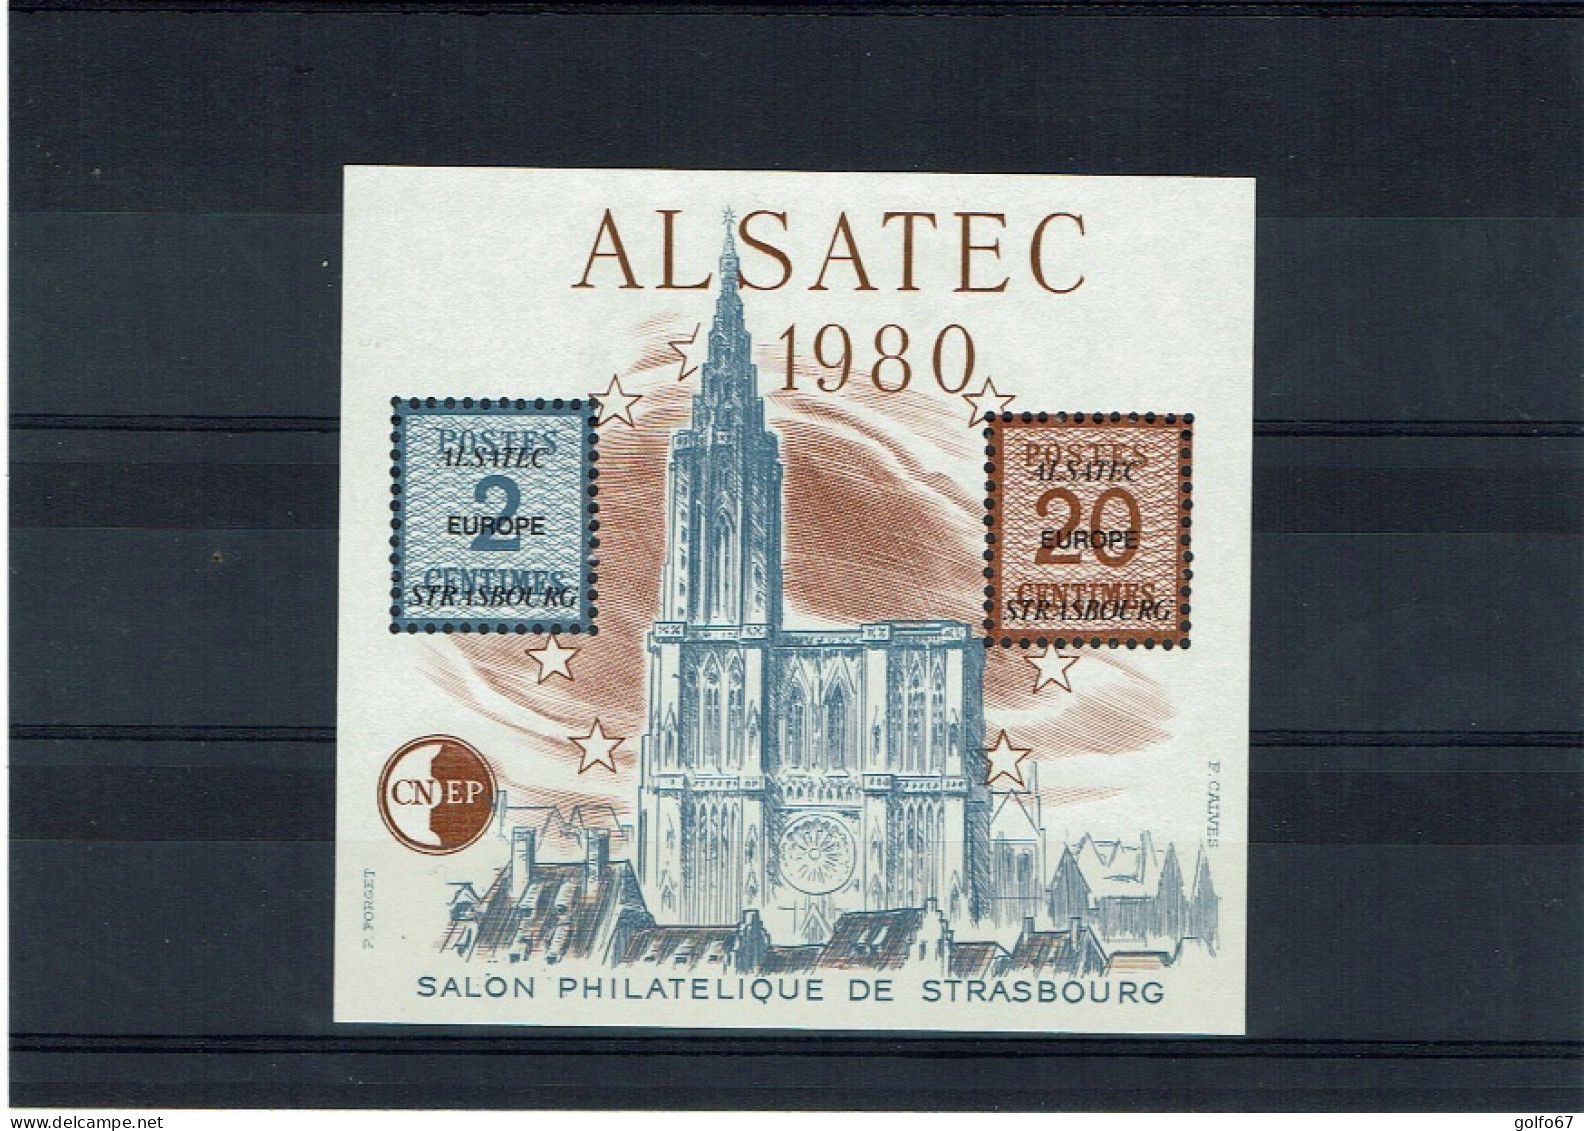 FRANCE Bloc CNEP 1980 Y&T N° 1 NEUF** ALSATEC (0506) - CNEP